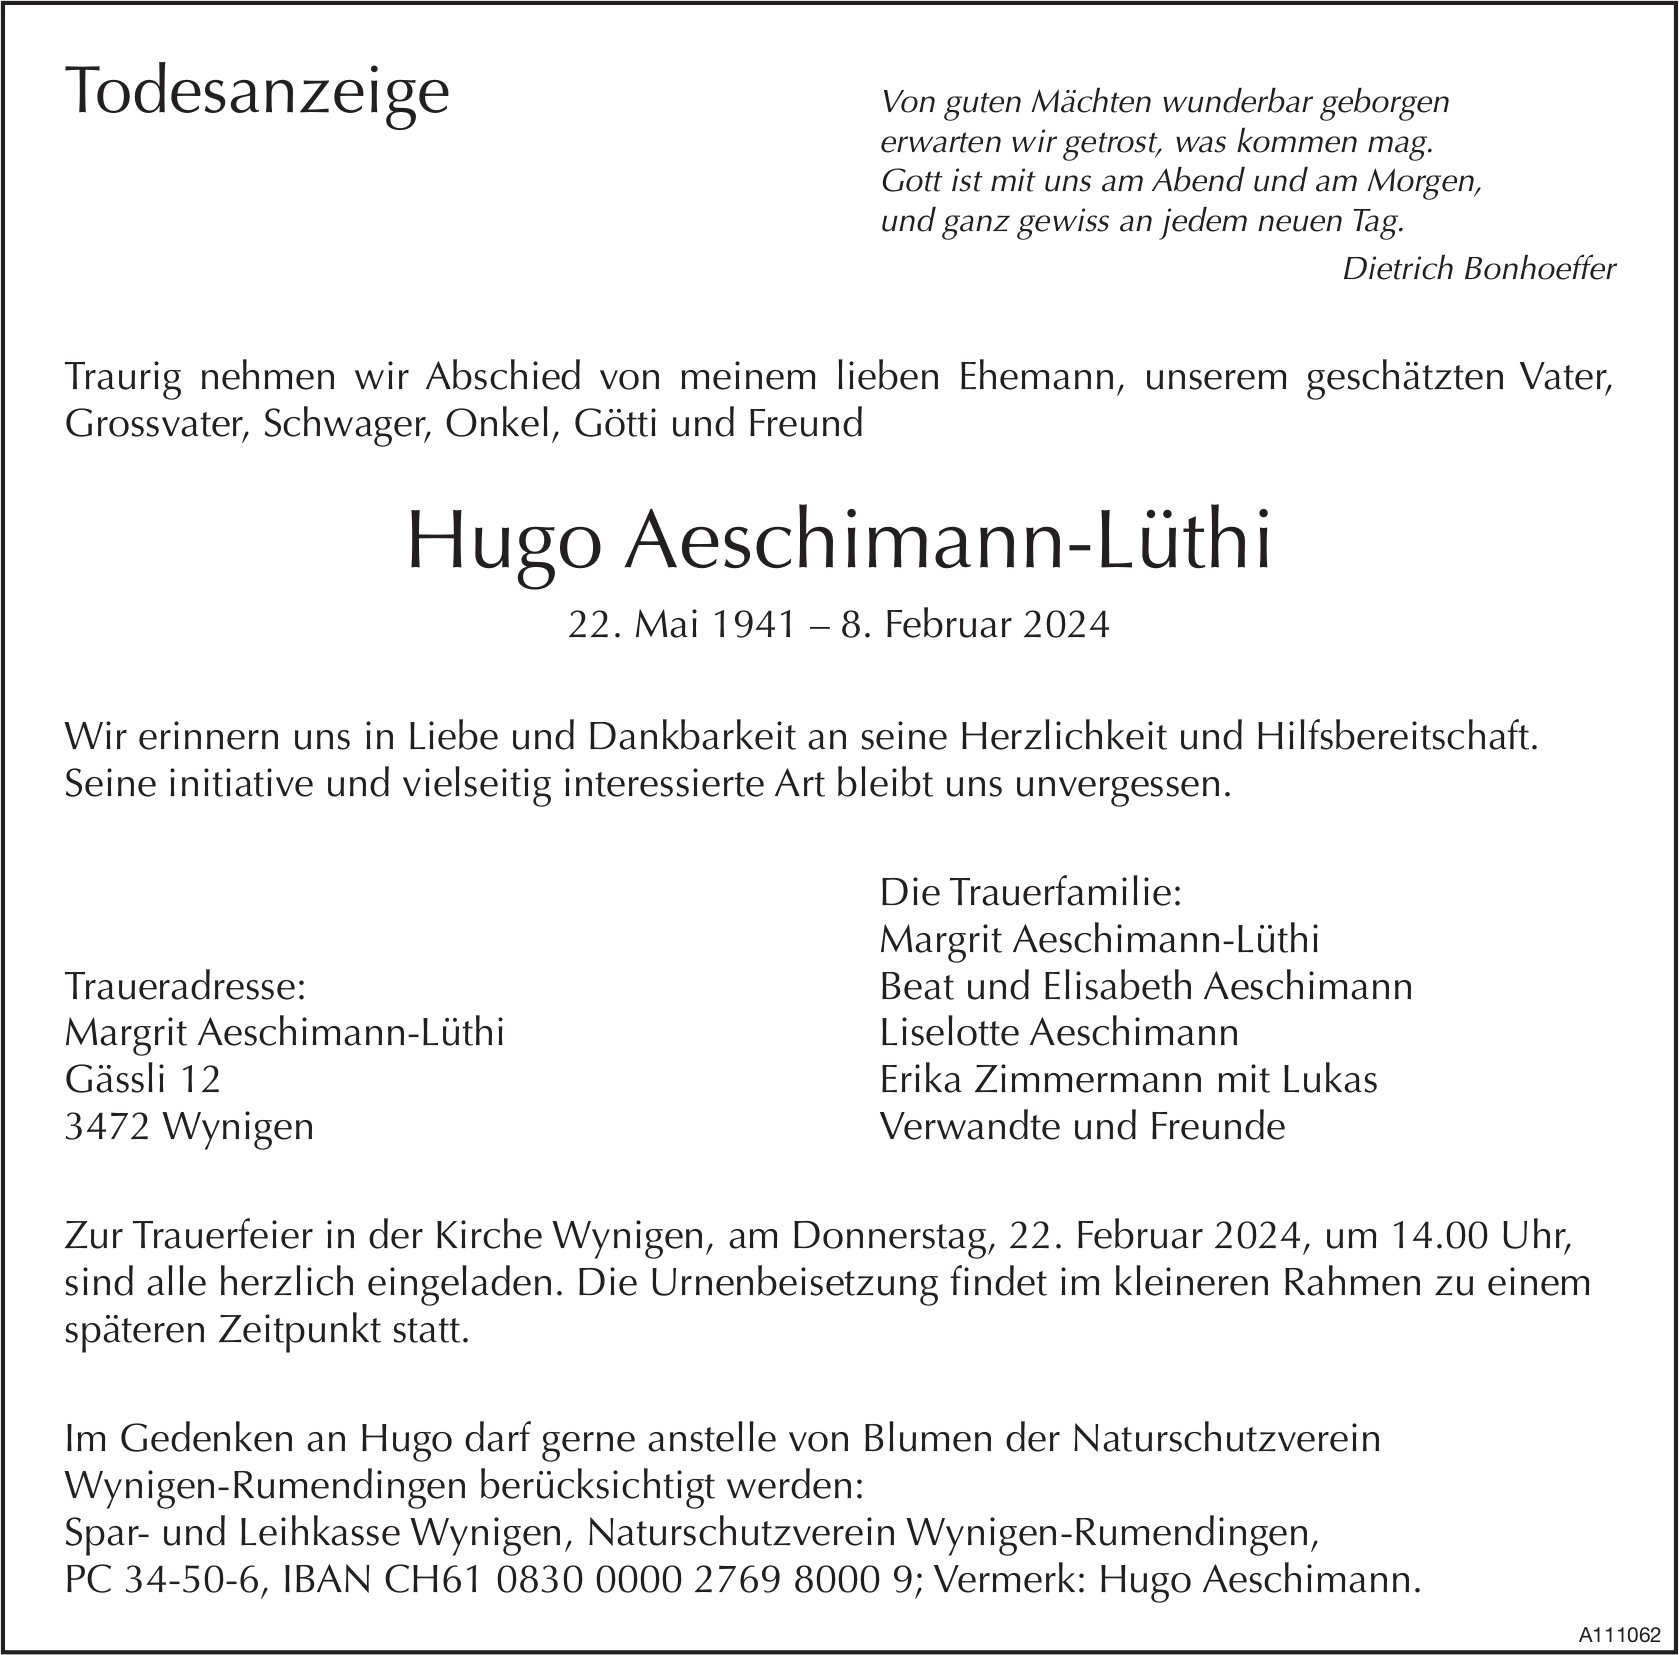 Hugo Aeschimann-Lüthi, Februar 2024 / TA